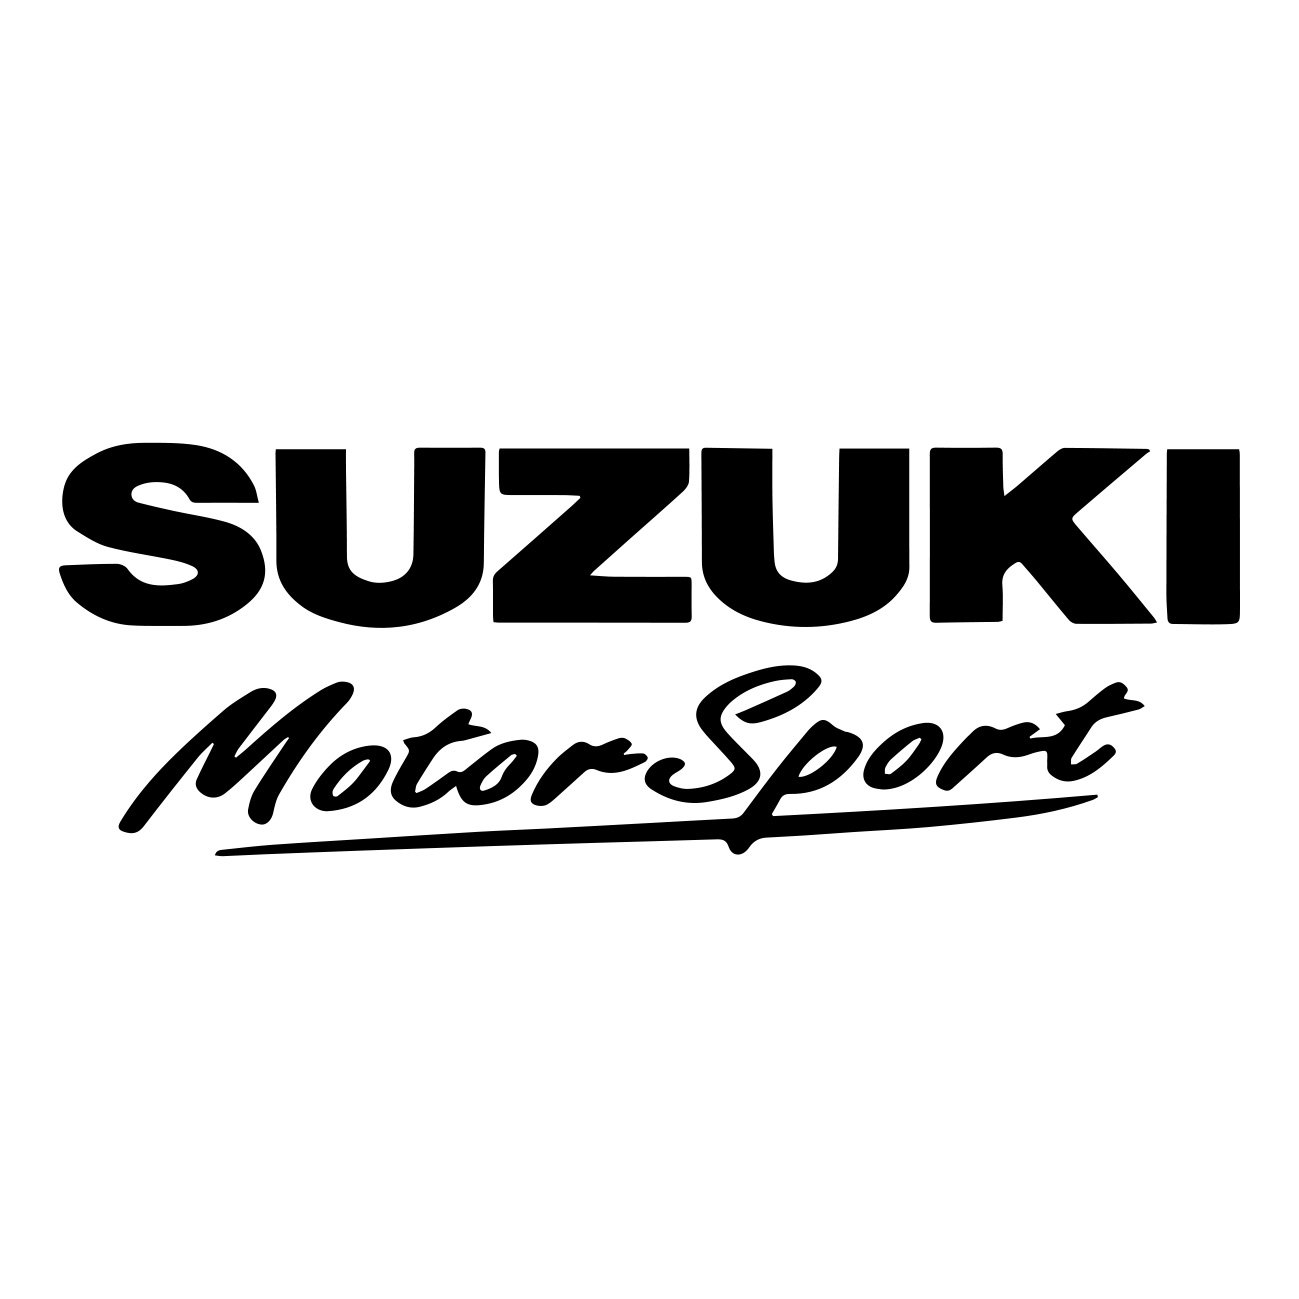 suzuki motorsport